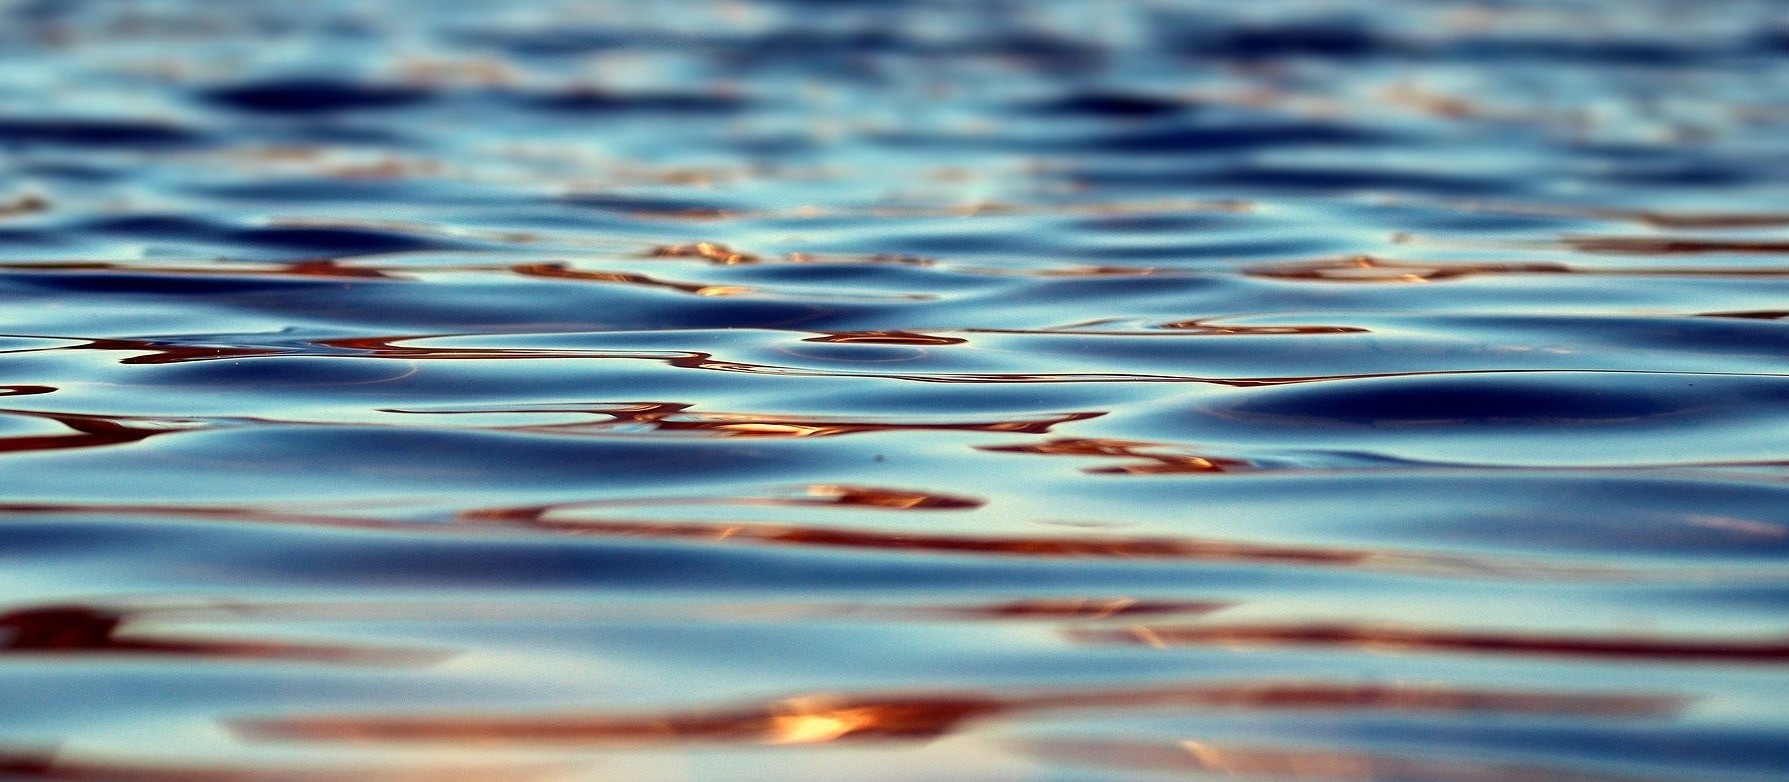 197 milhões de litros d'água foram utilizados do Lago Municipal para abastecimento